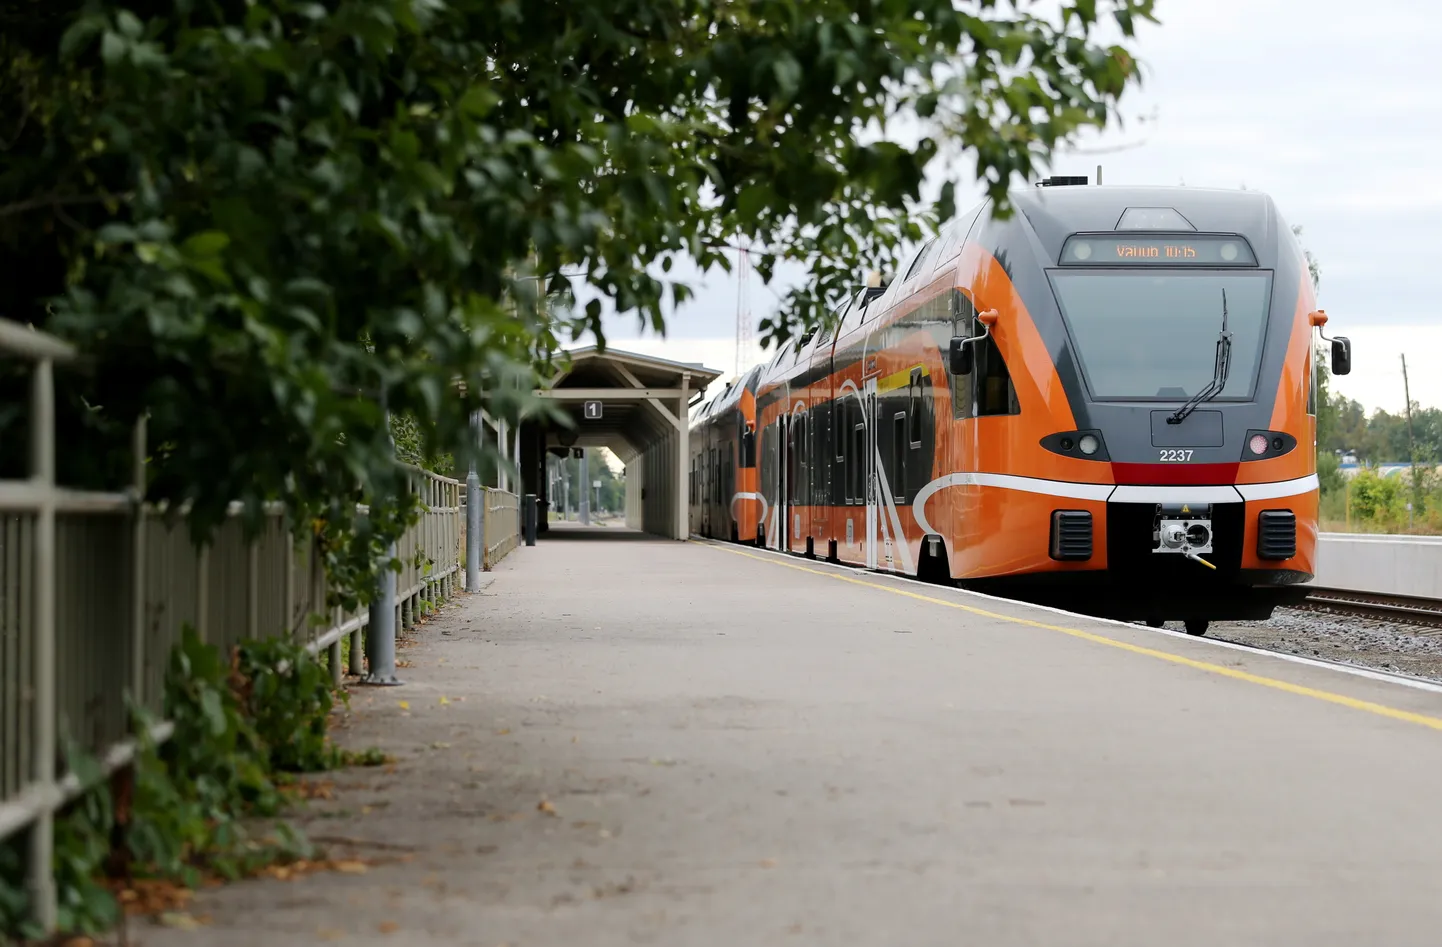 Alates järgmise aasta septembrist hakkavad Tartu ja Tallinna vahelisel rongiliinil sõitma 16 uut Elroni rongi.